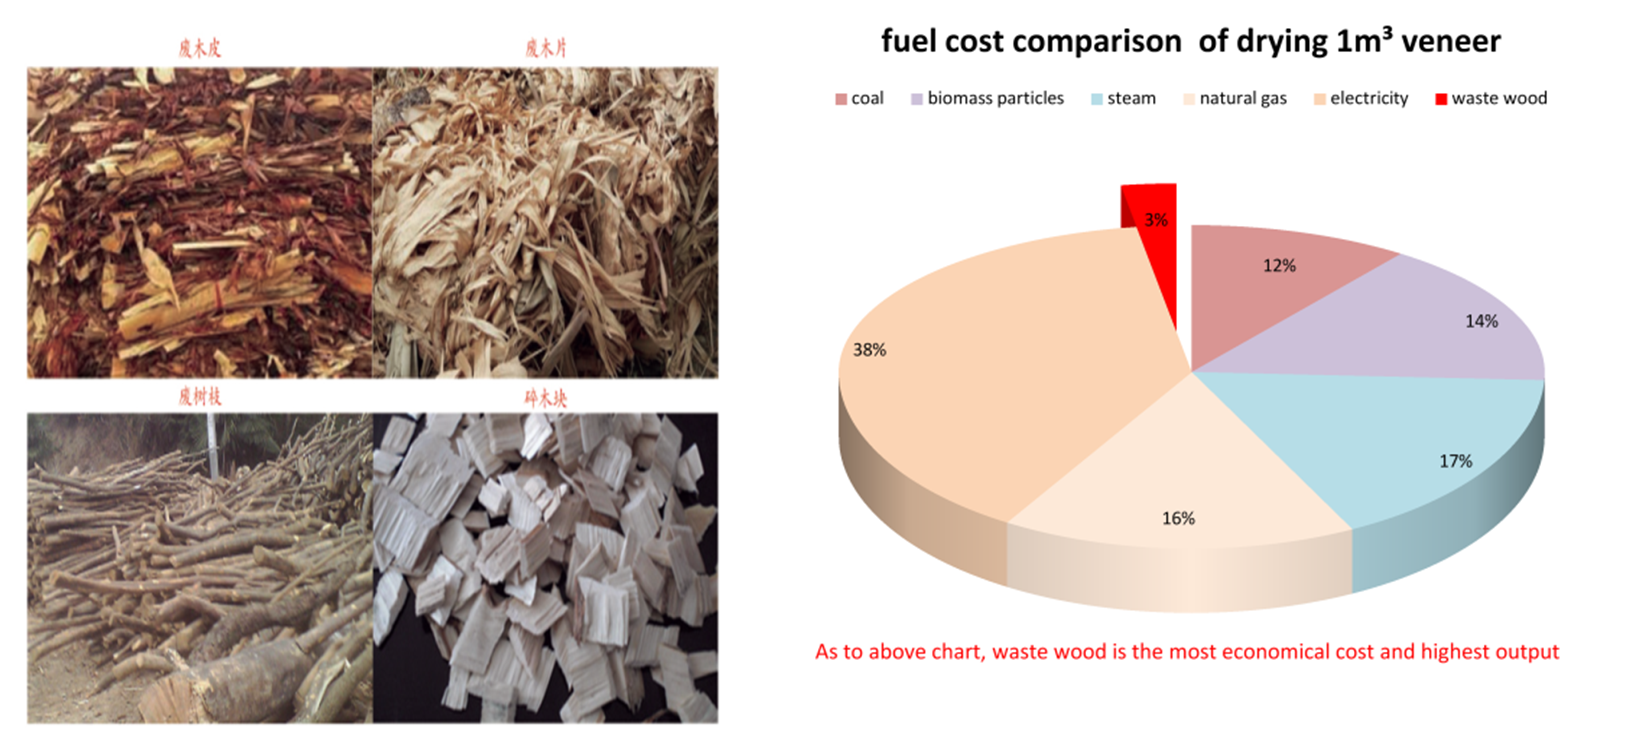 madera de desecho y comparación de costos de combustible